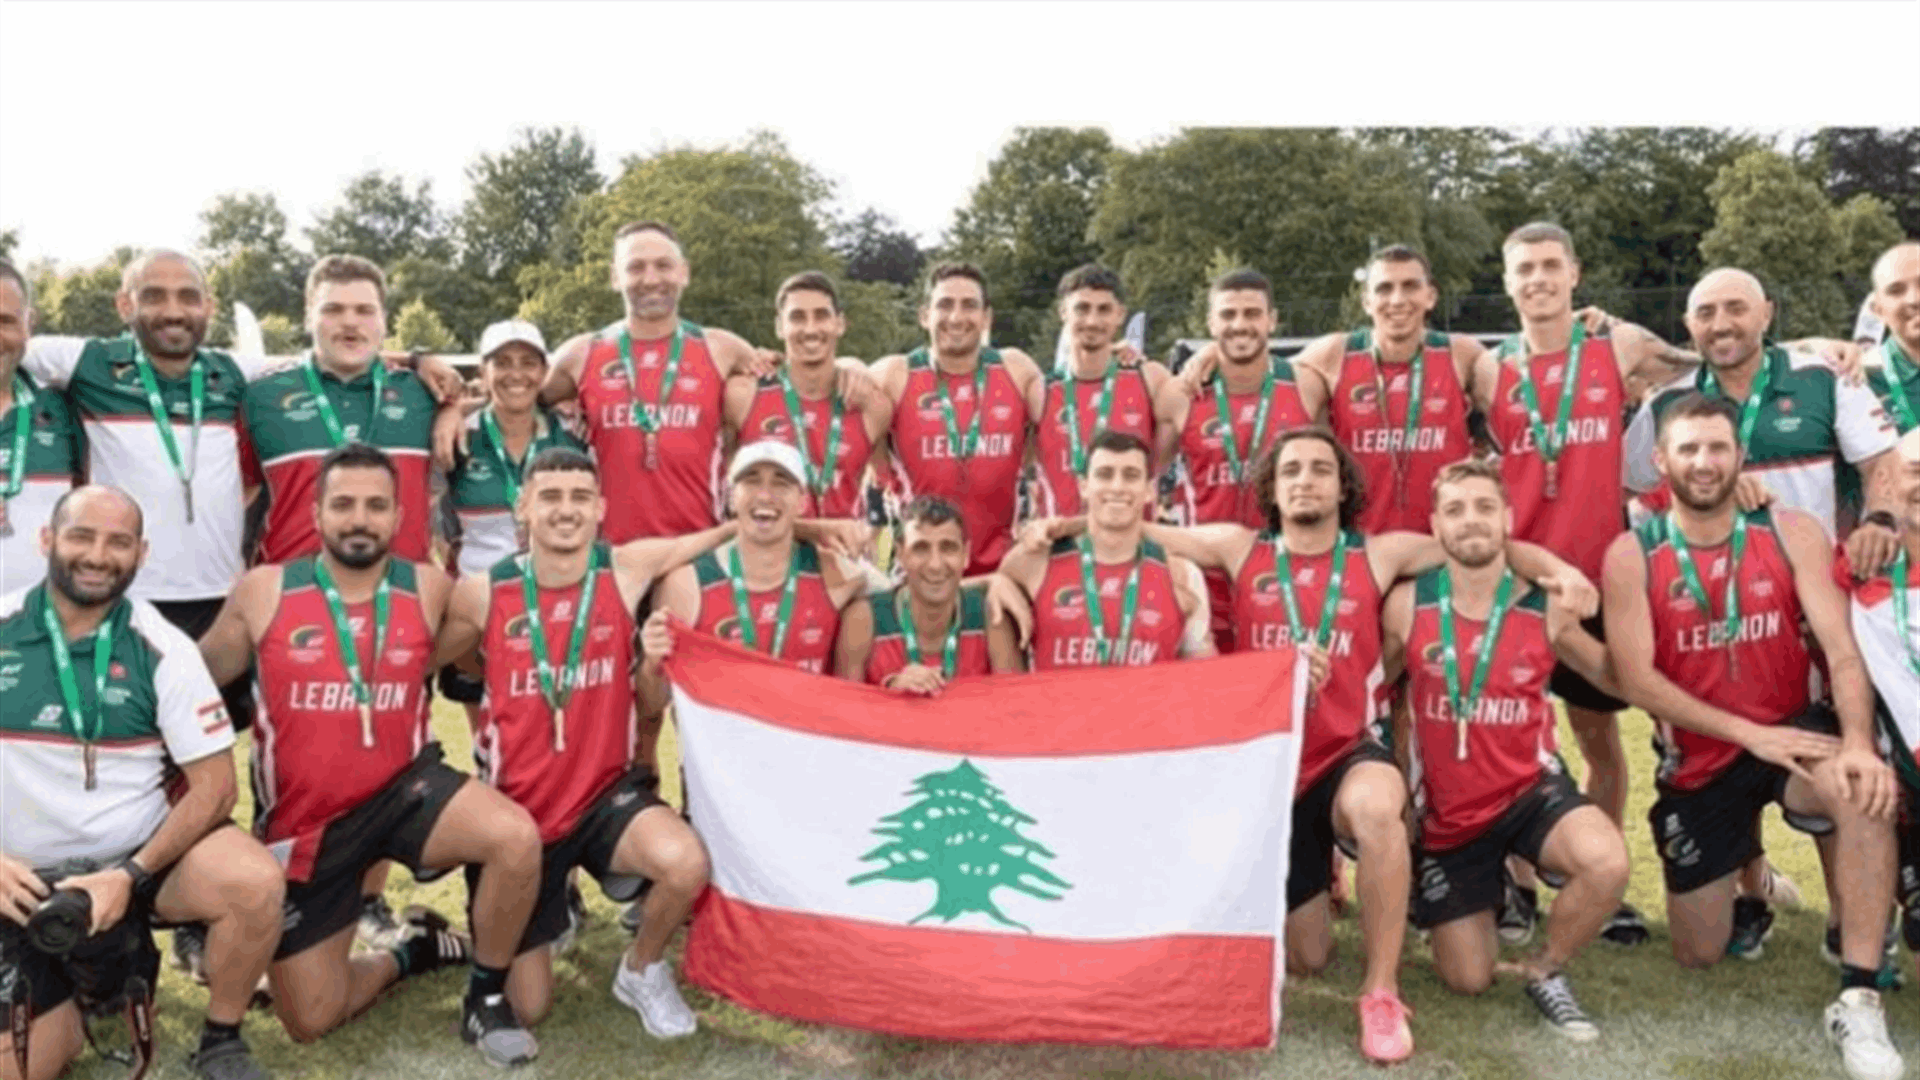 كلاس بعد فوز بعثة لبنان في التوتش ركبي بالميدالية البرونزية: رياضيونا يقاتلون بالإرادة واللحم الحيّ